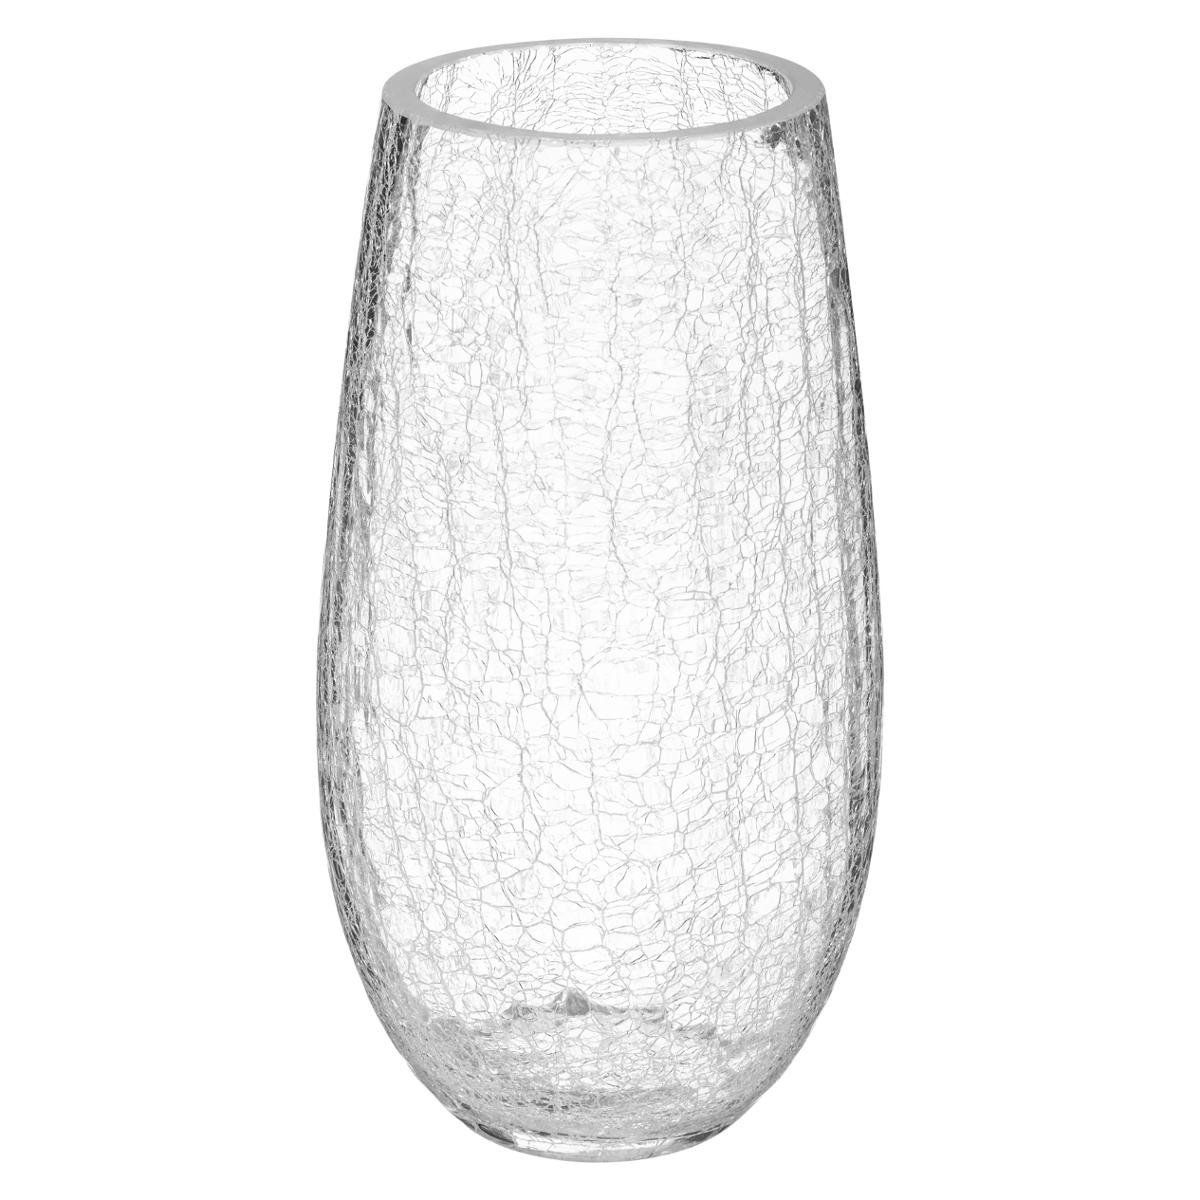 Atmosphera váza s rozbitým skleněným motivem, průměr 14 cm - EDAXO.CZ s.r.o.